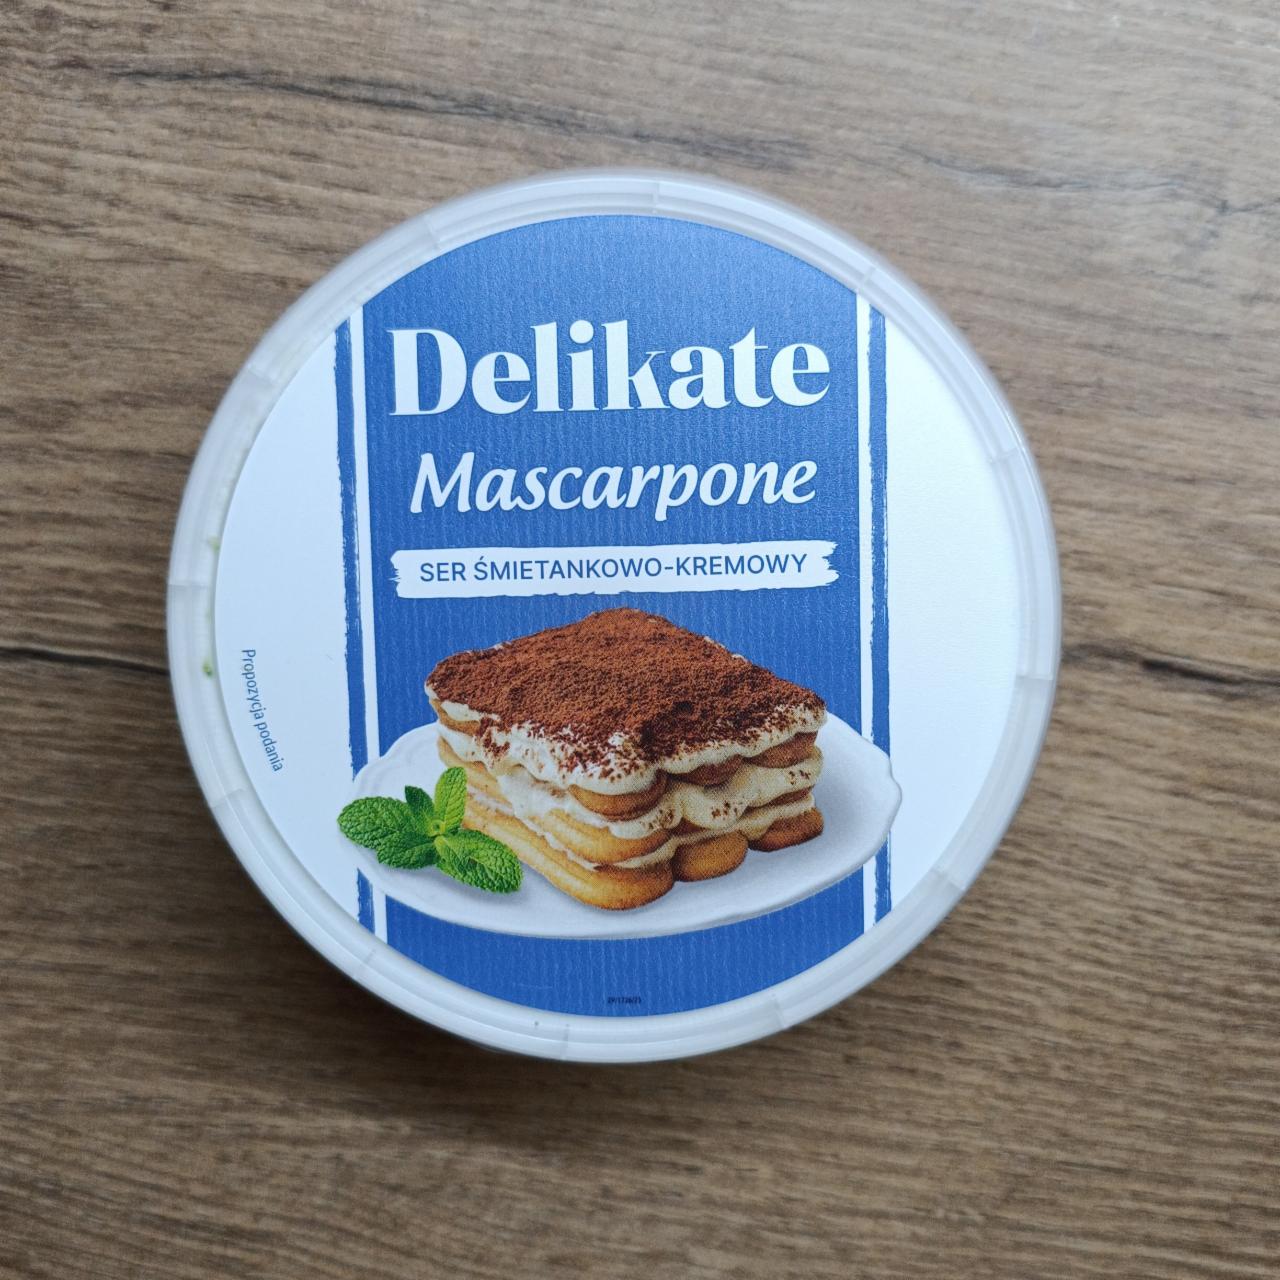 Zdjęcia - Mascarpone ser śmietankowo kremowy Delikate